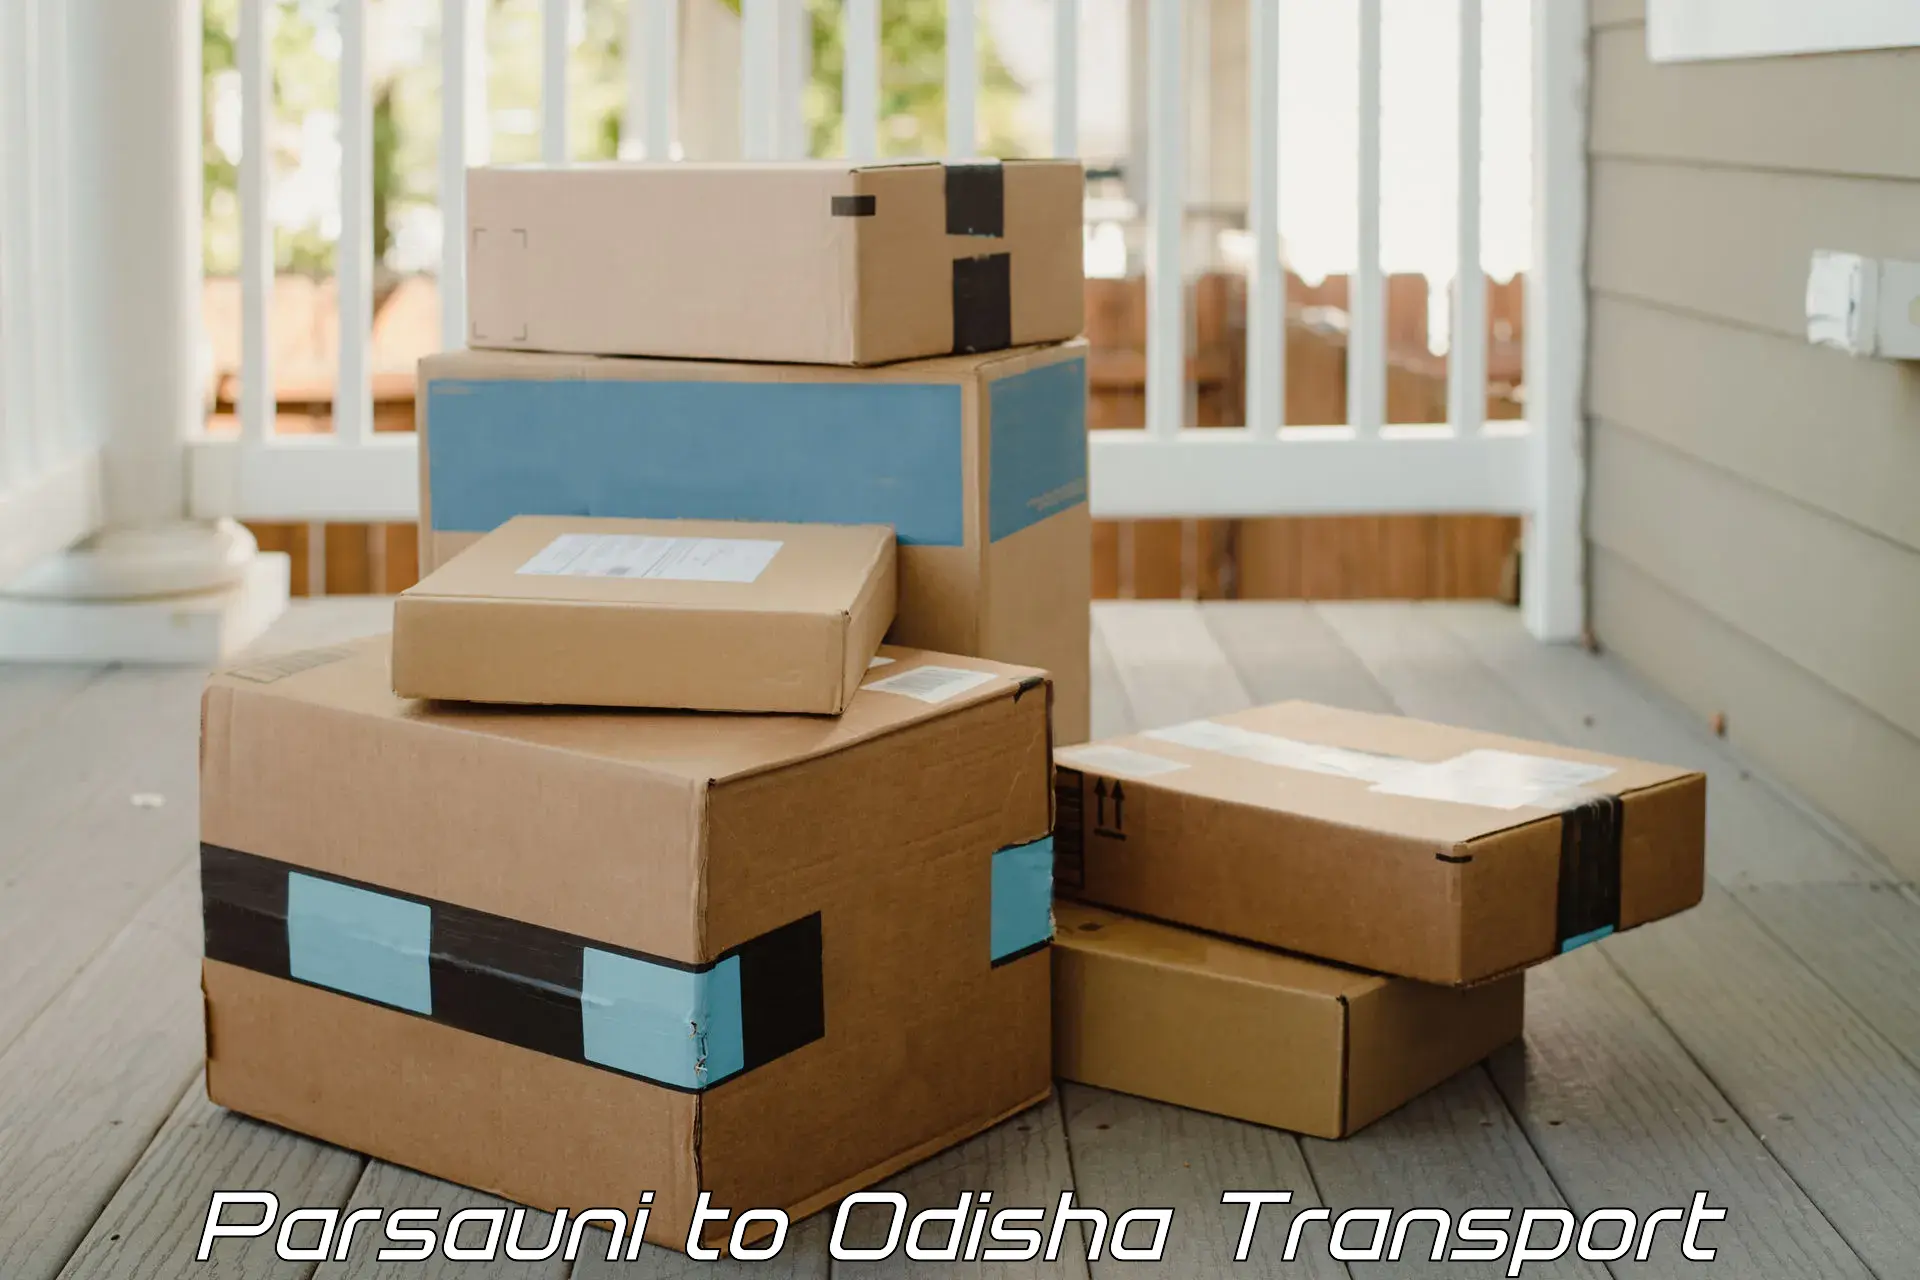 Cargo transportation services Parsauni to IIT Bhubaneshwar